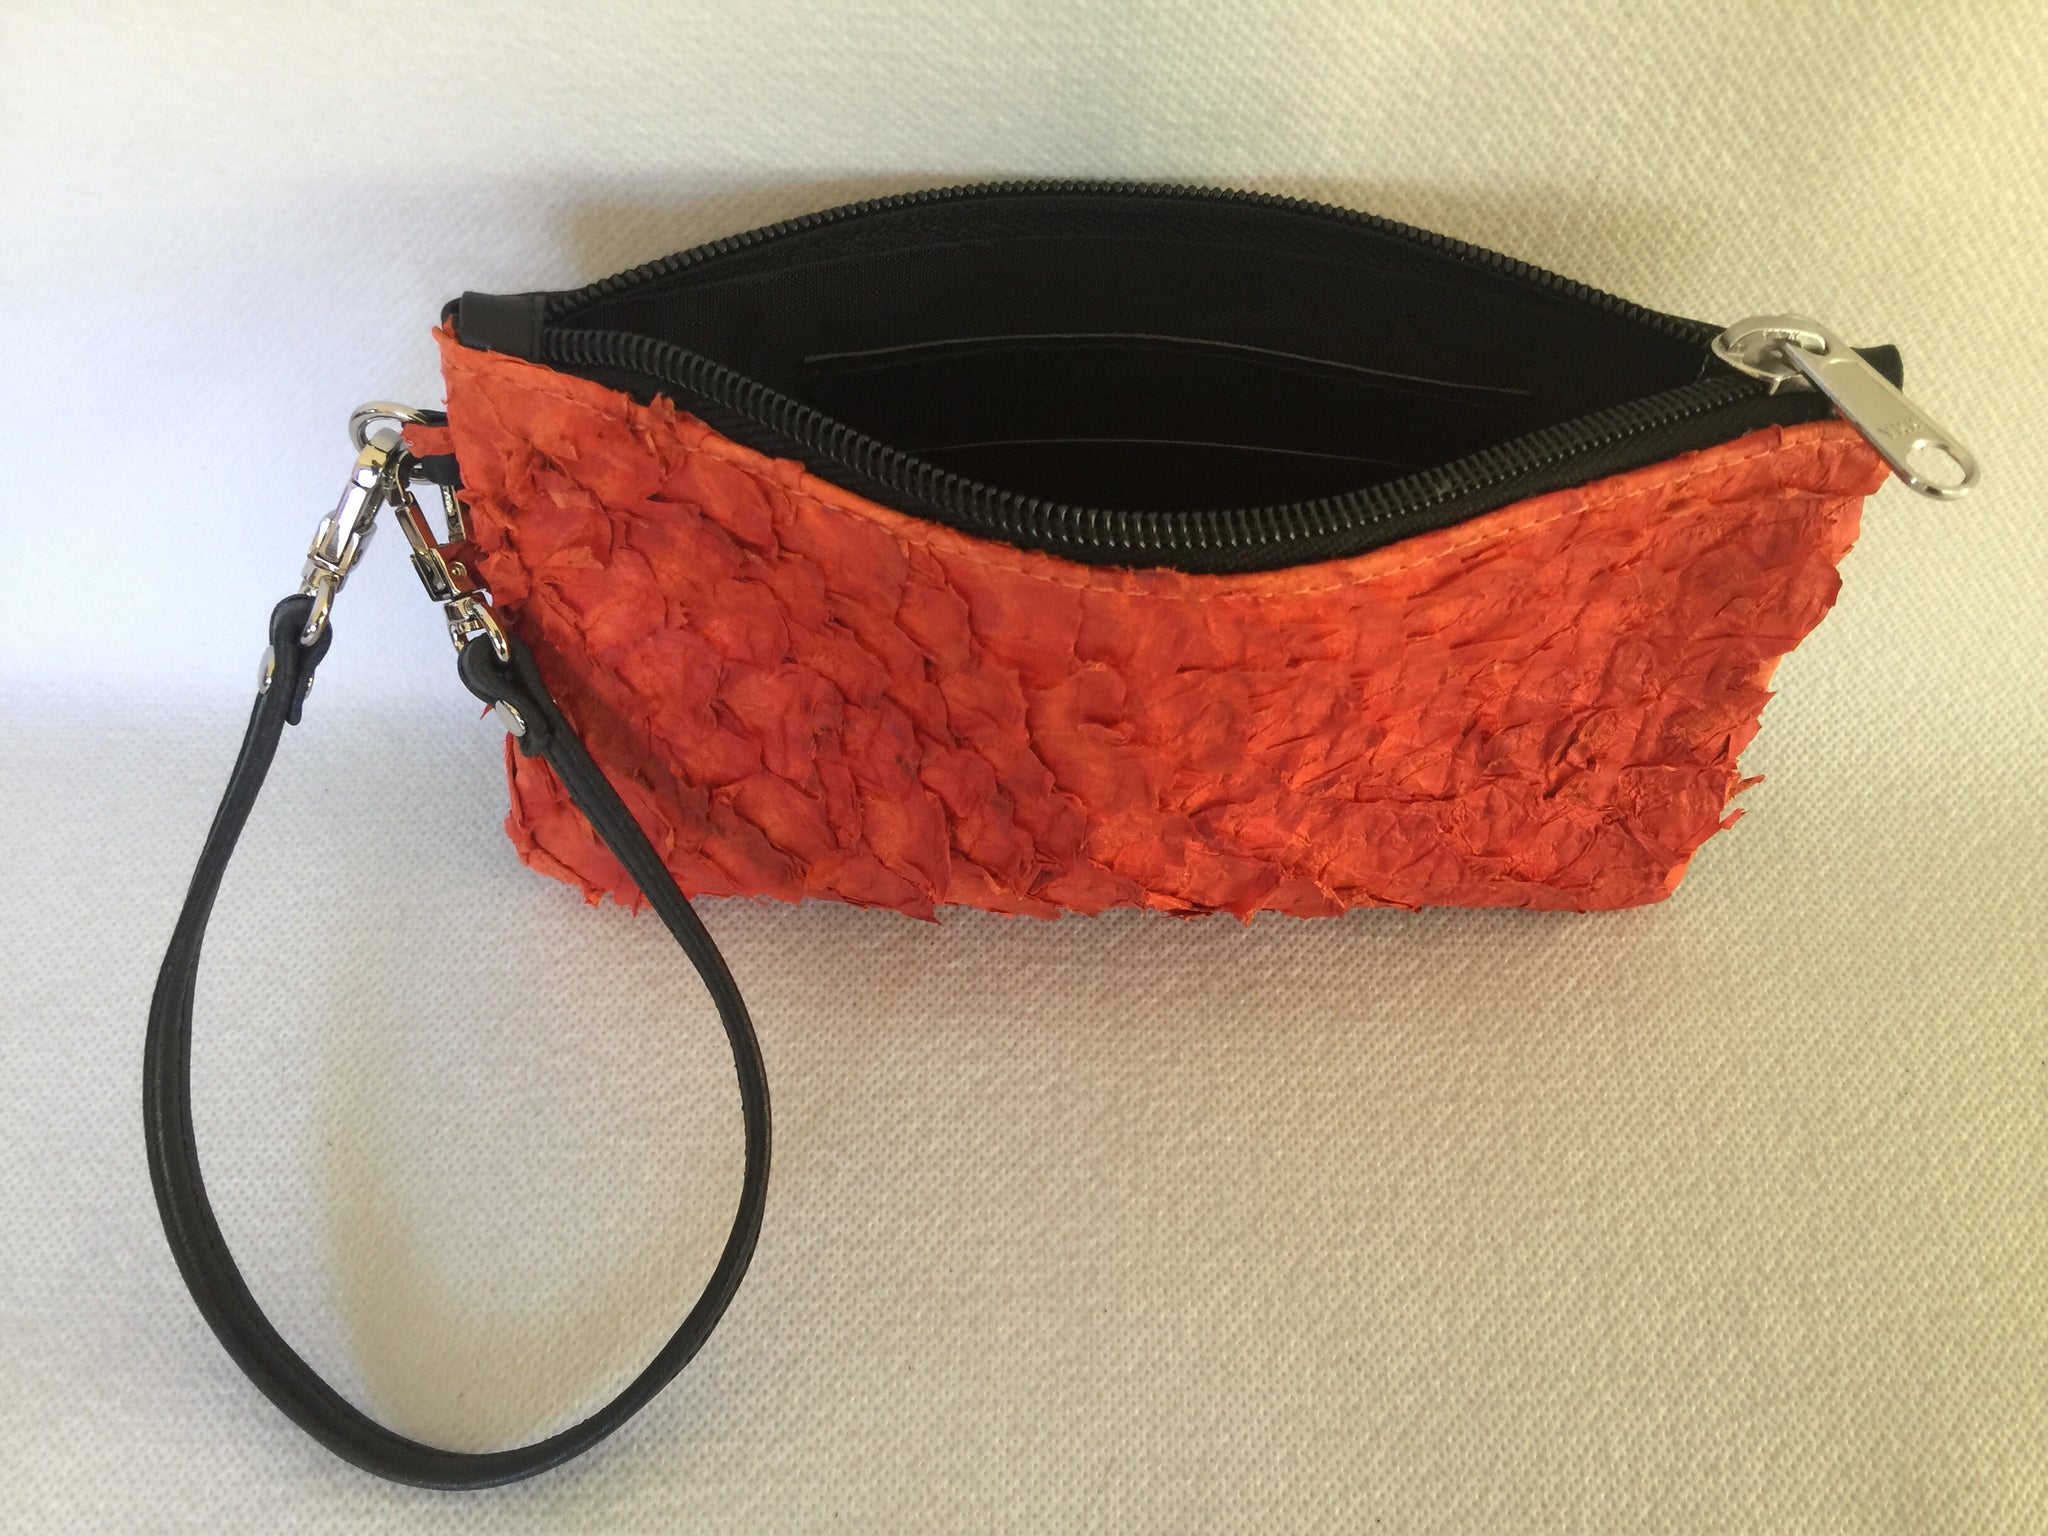 Ella purse featuring orange ruffled barramundi from the Kimberly WA